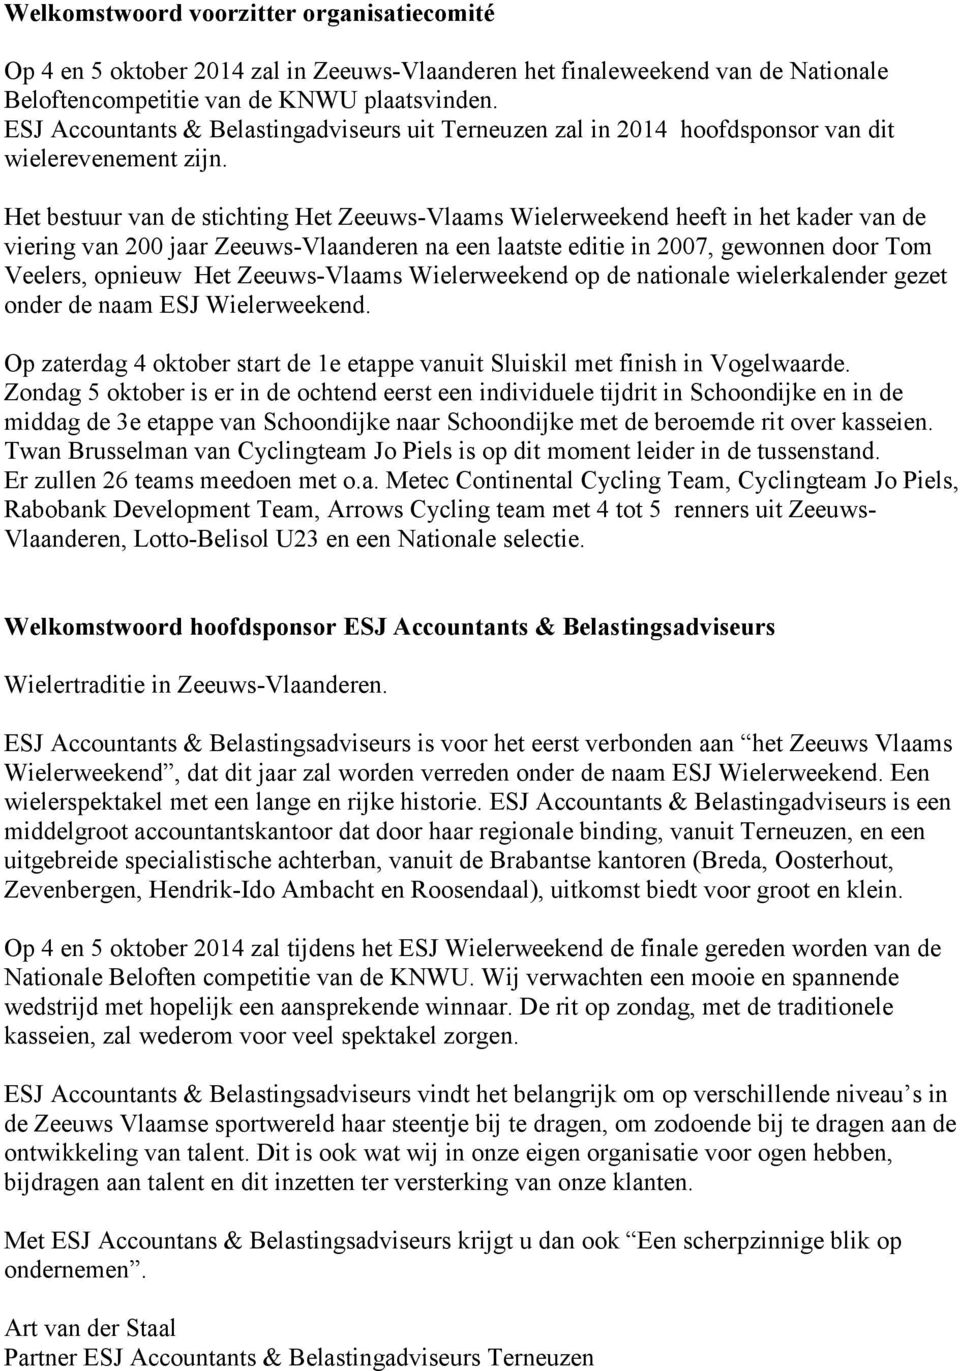 Het bestuur van de stichting Het Zeeuws-Vlaams Wielerweekend heeft in het kader van de viering van 200 jaar Zeeuws-Vlaanderen na een laatste editie in 2007, gewonnen door Tom Veelers, opnieuw Het